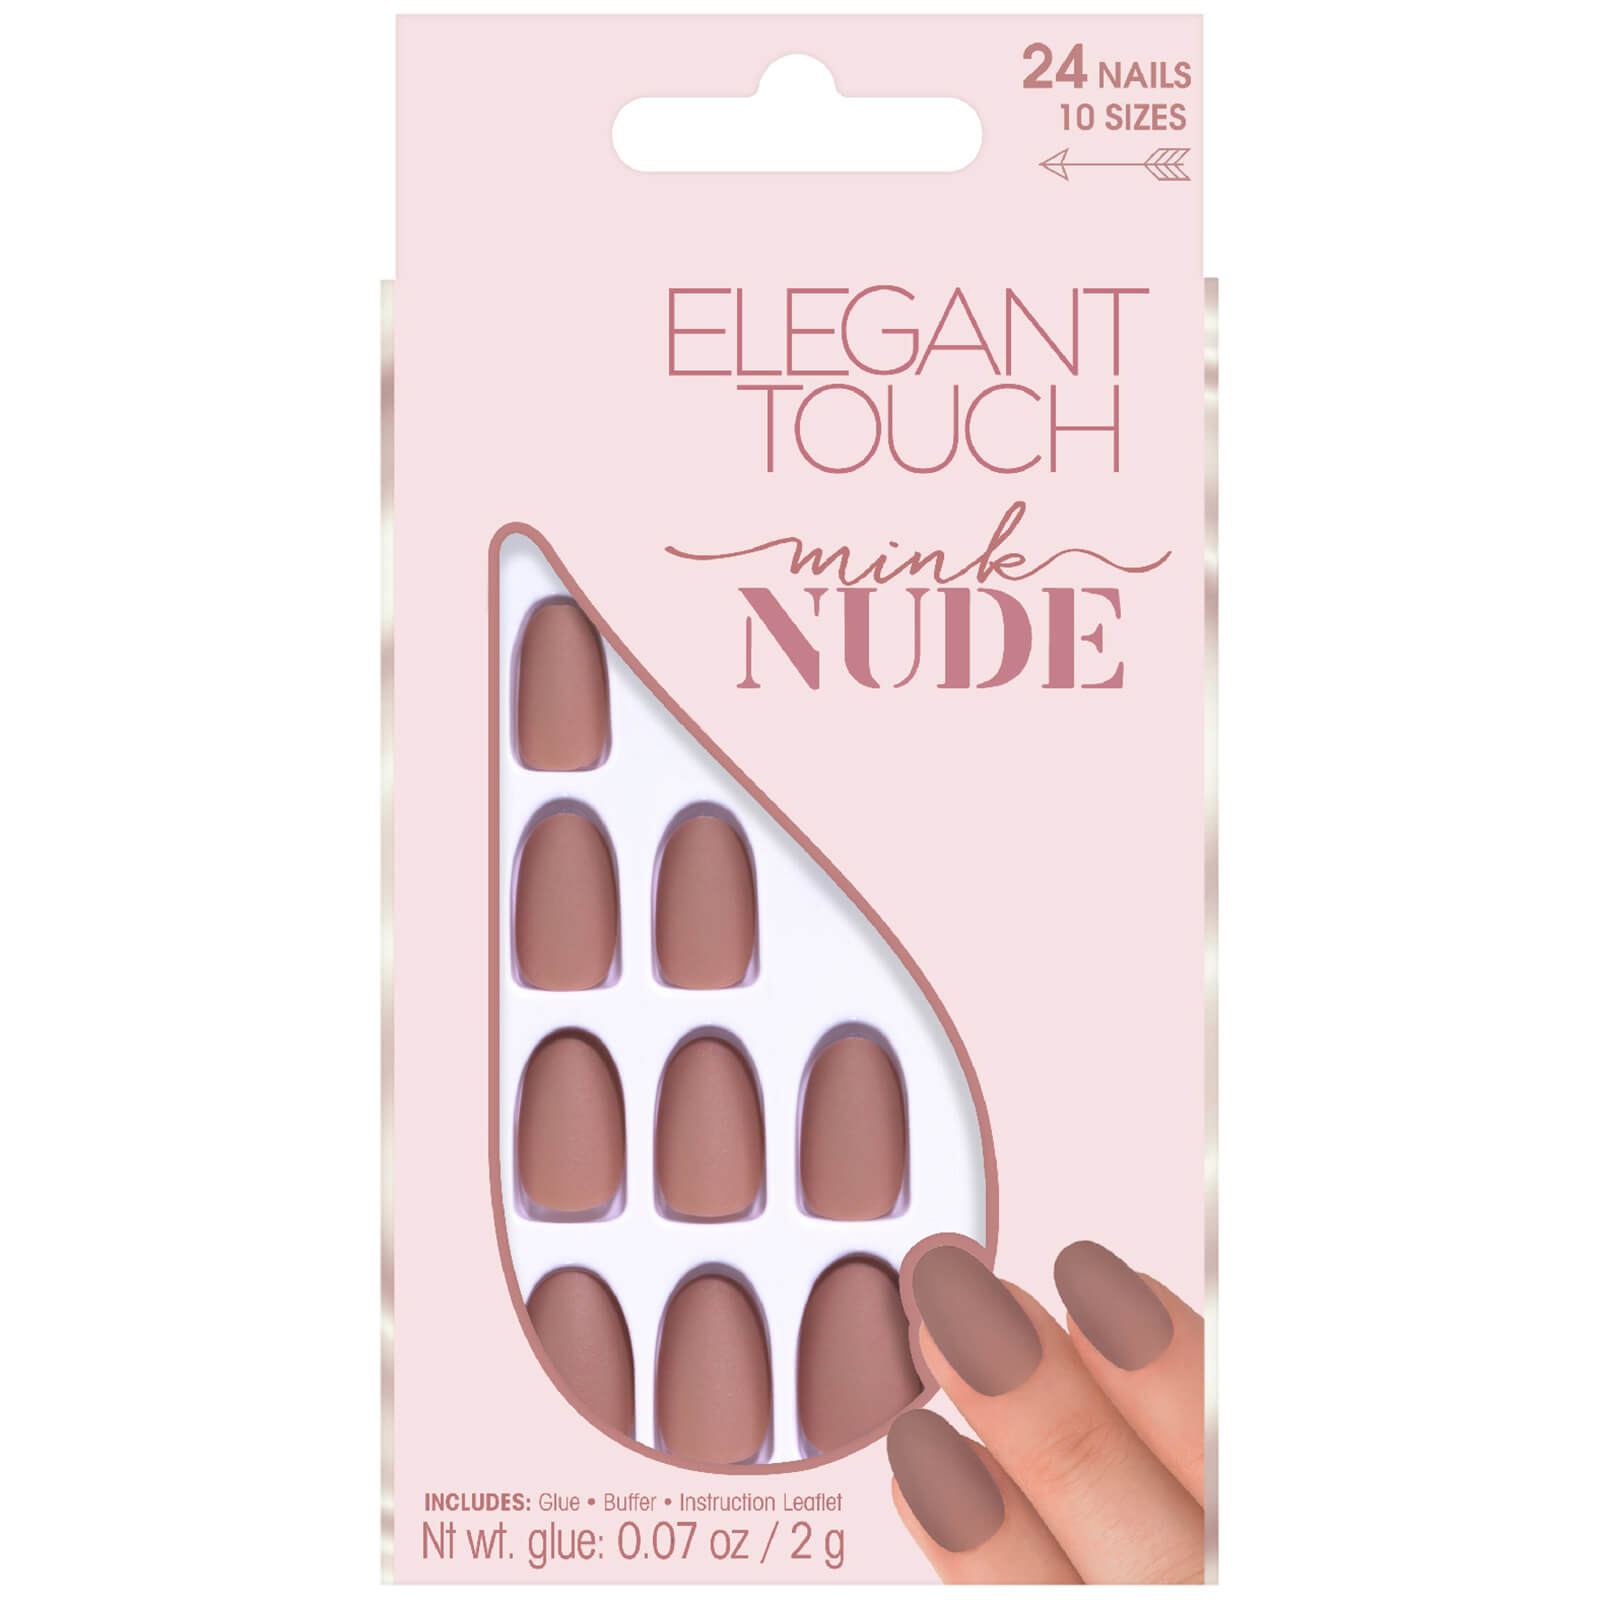 優雅的觸感 Nude Collection 美甲貼片 - 水貂